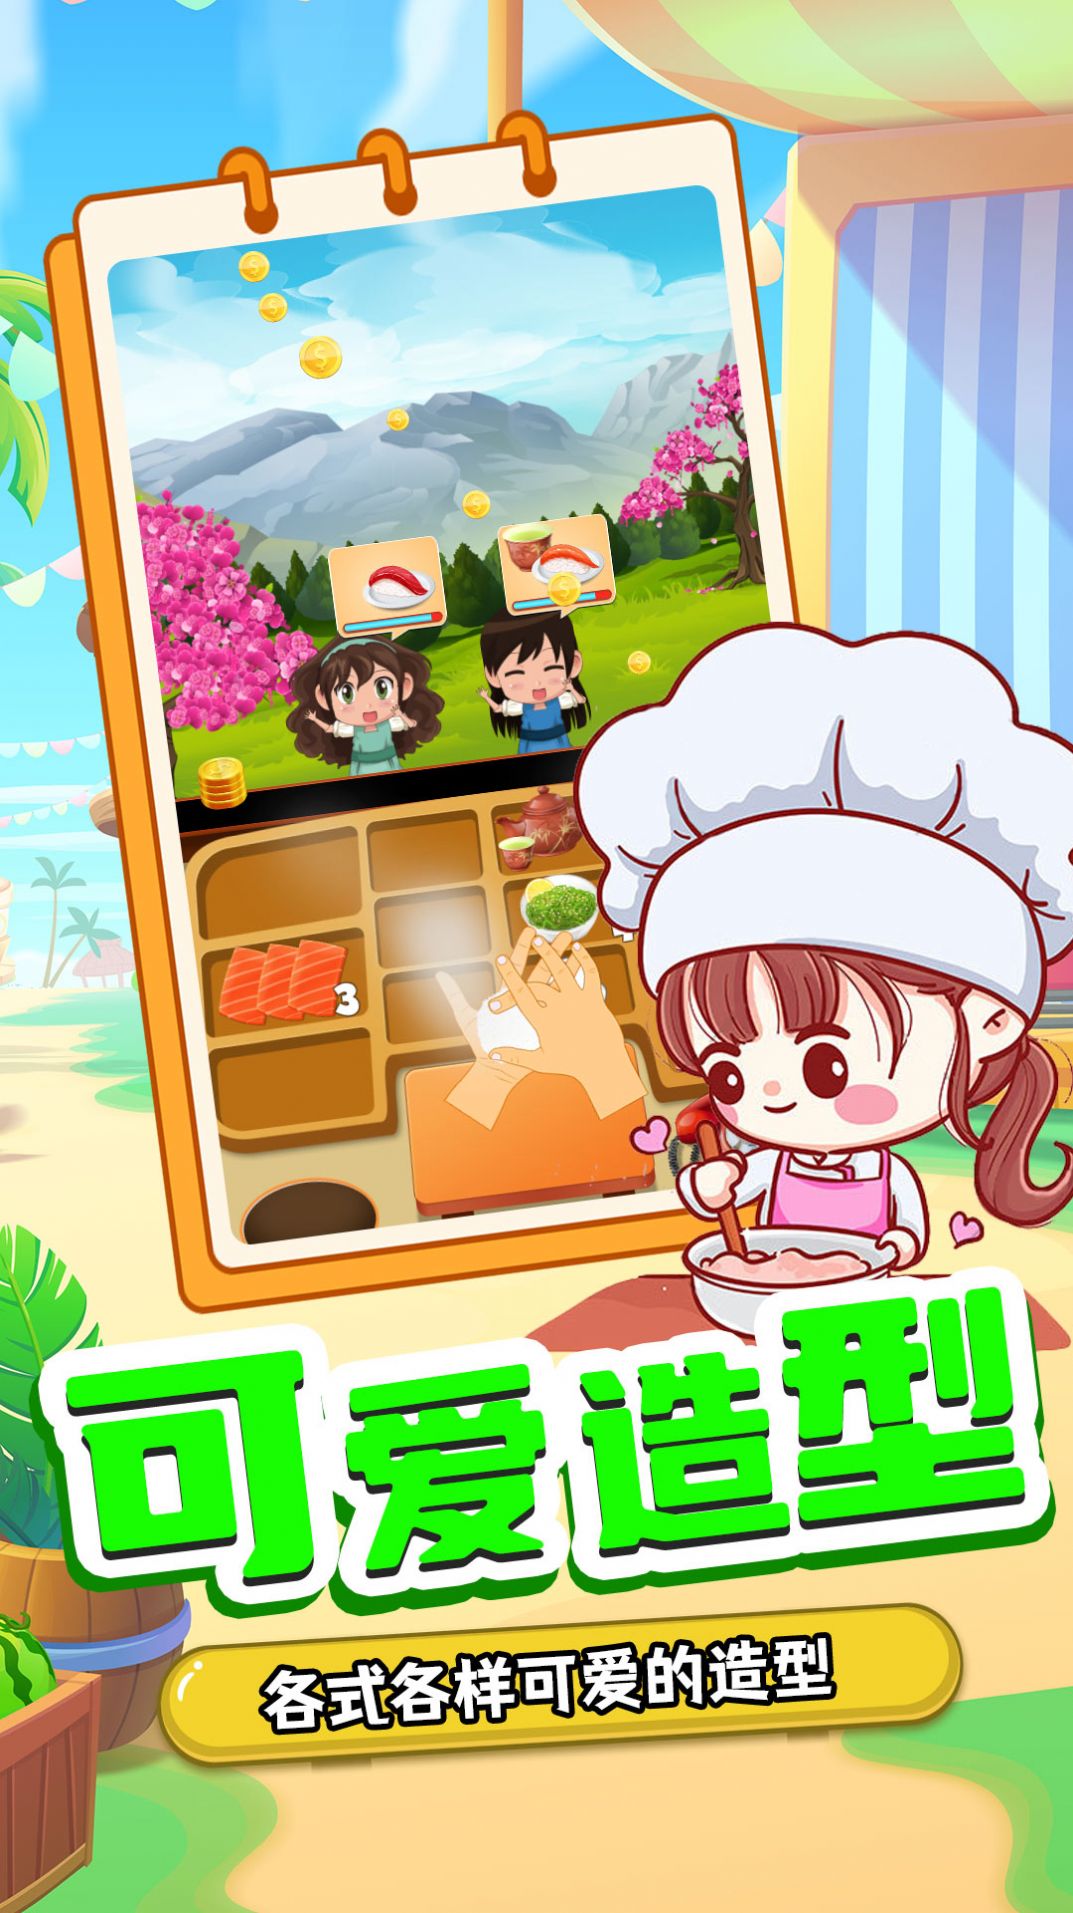 宝宝寿司料理厨房游戏安卓版下载图片1